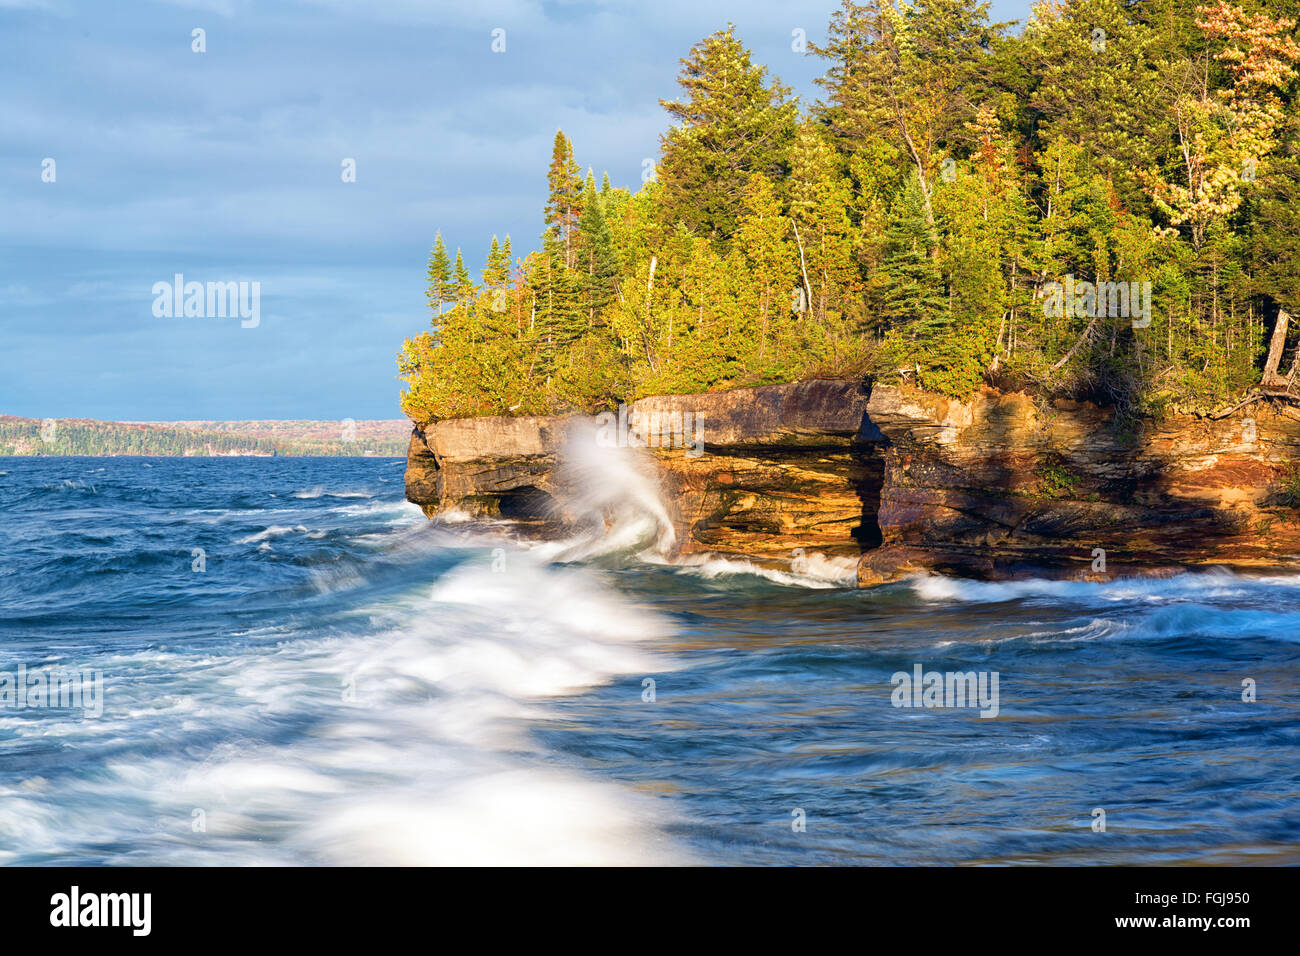 Les vagues déferlent sur un rivage rocailleux, sur le lac Supérieur près de Munising au Michigan Banque D'Images